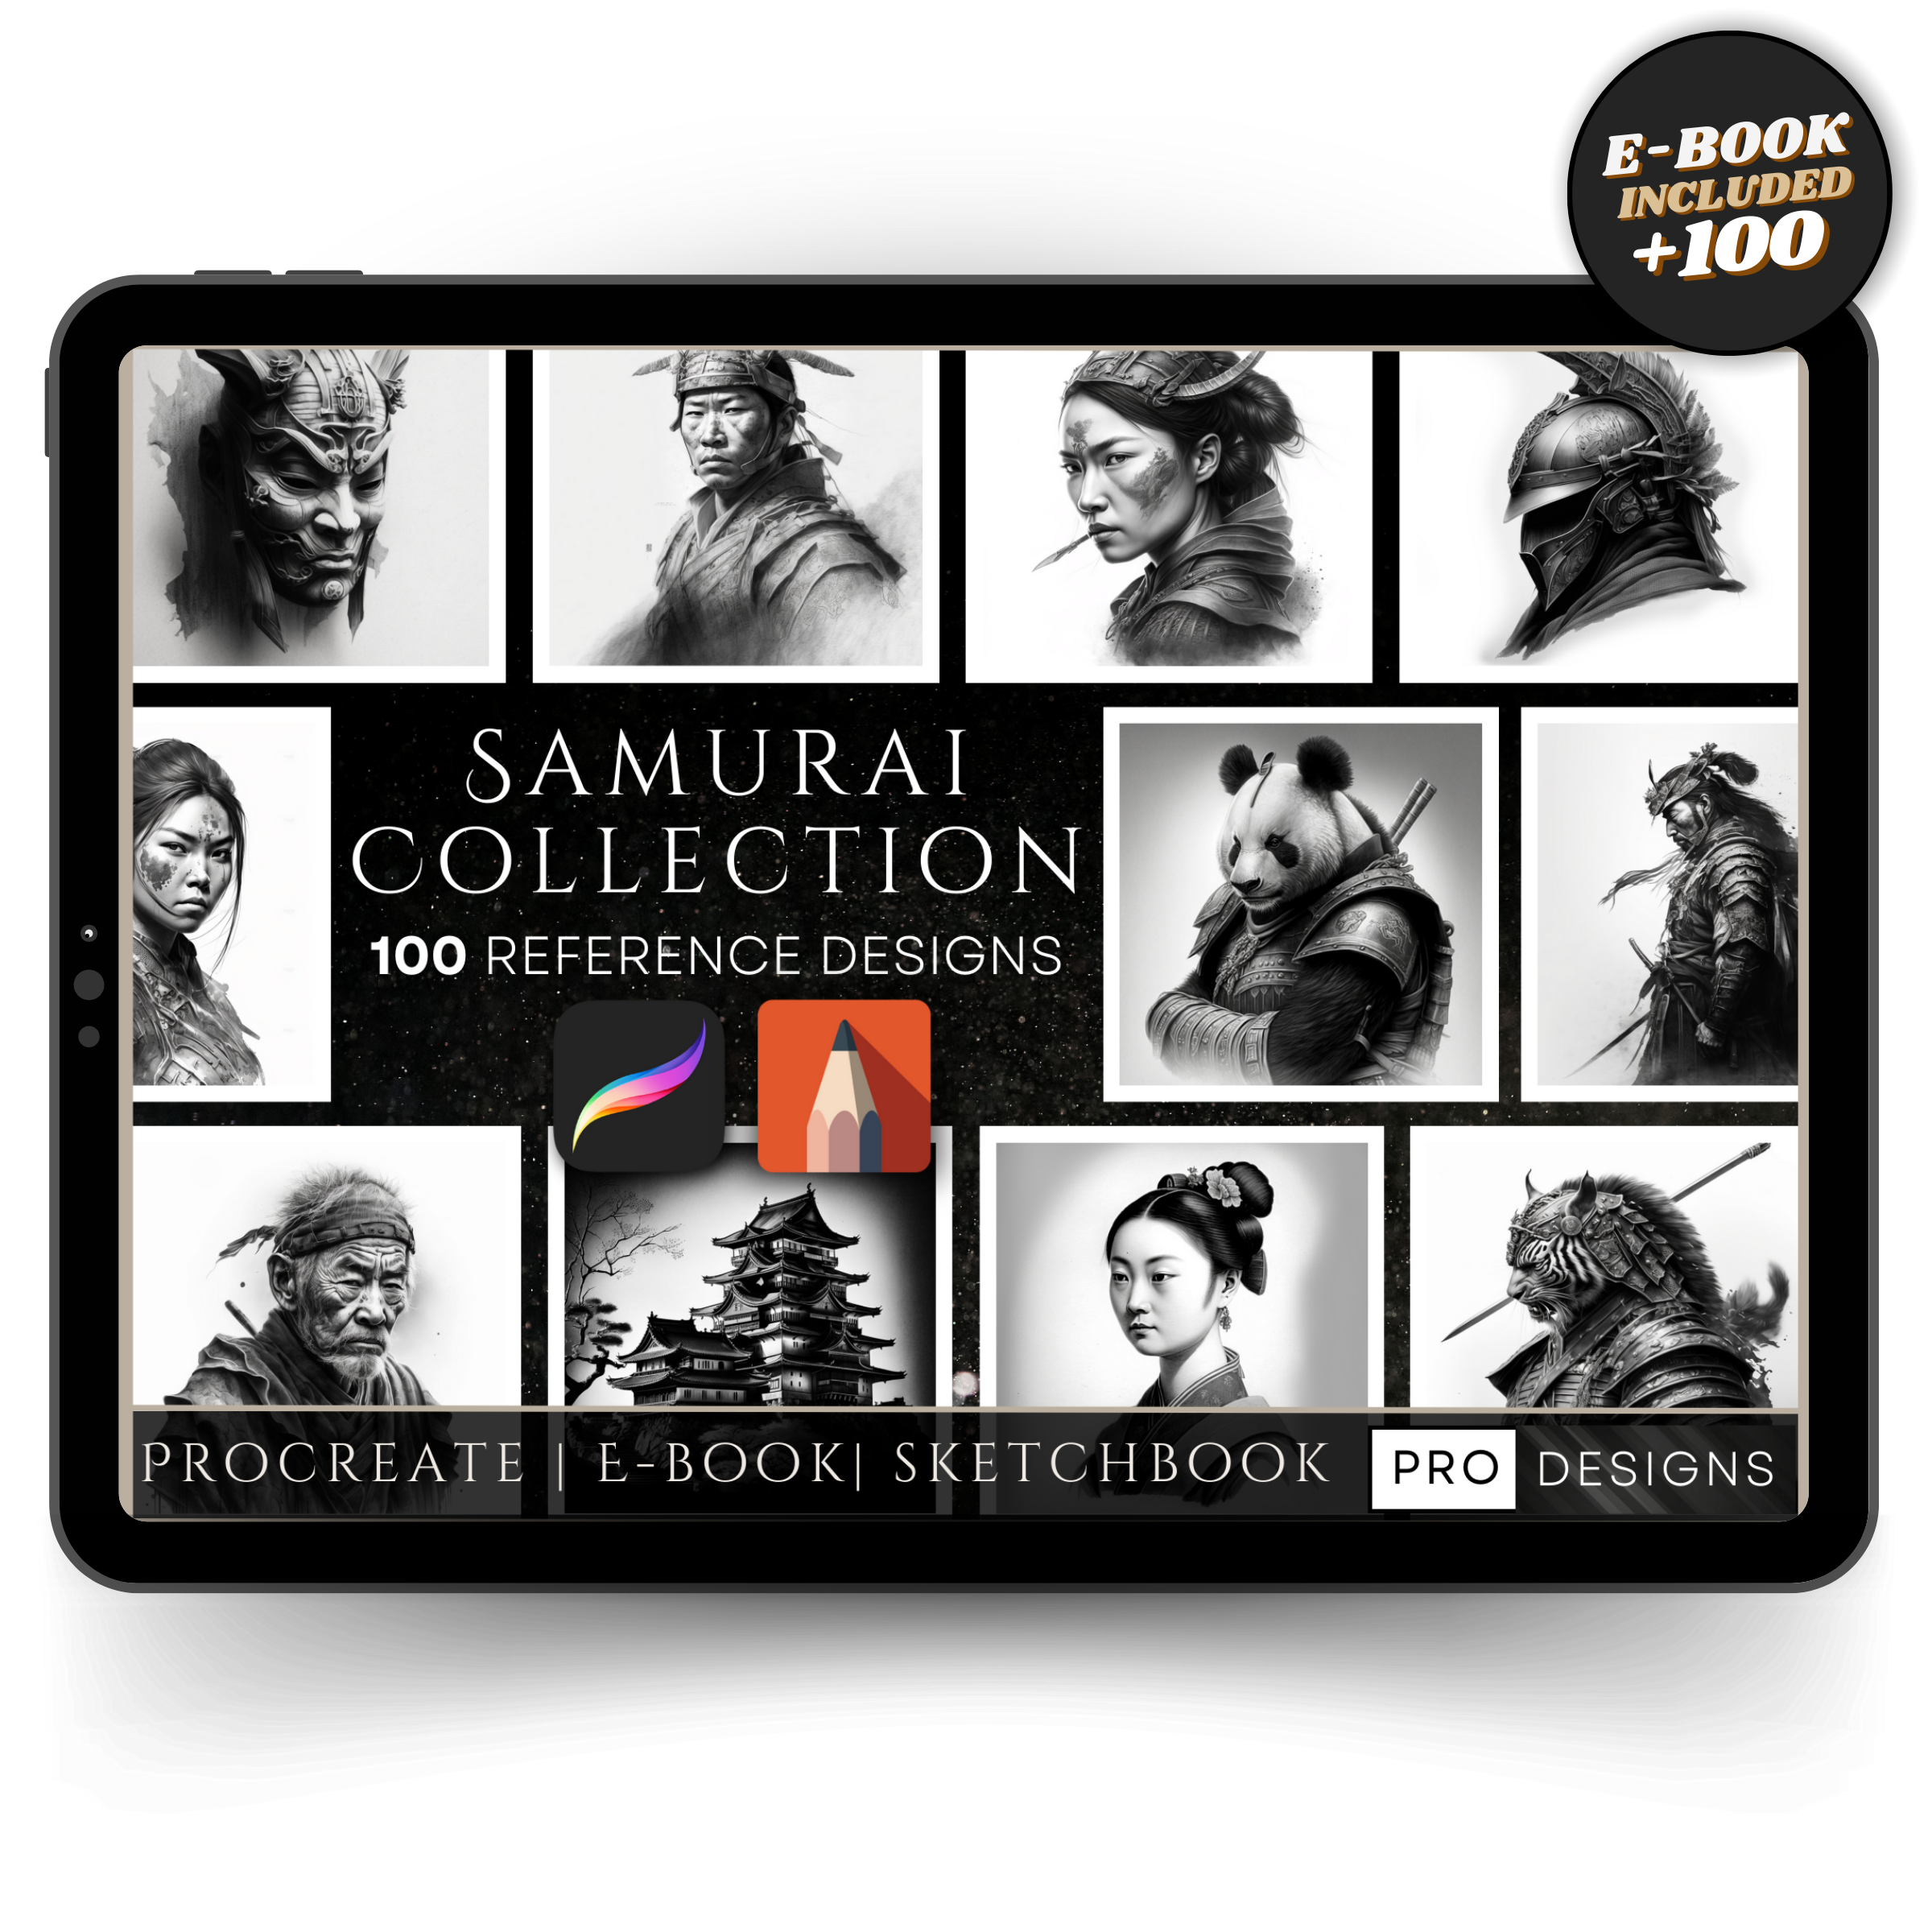 "Bushido Blades" - The Samurai Warriors Collection